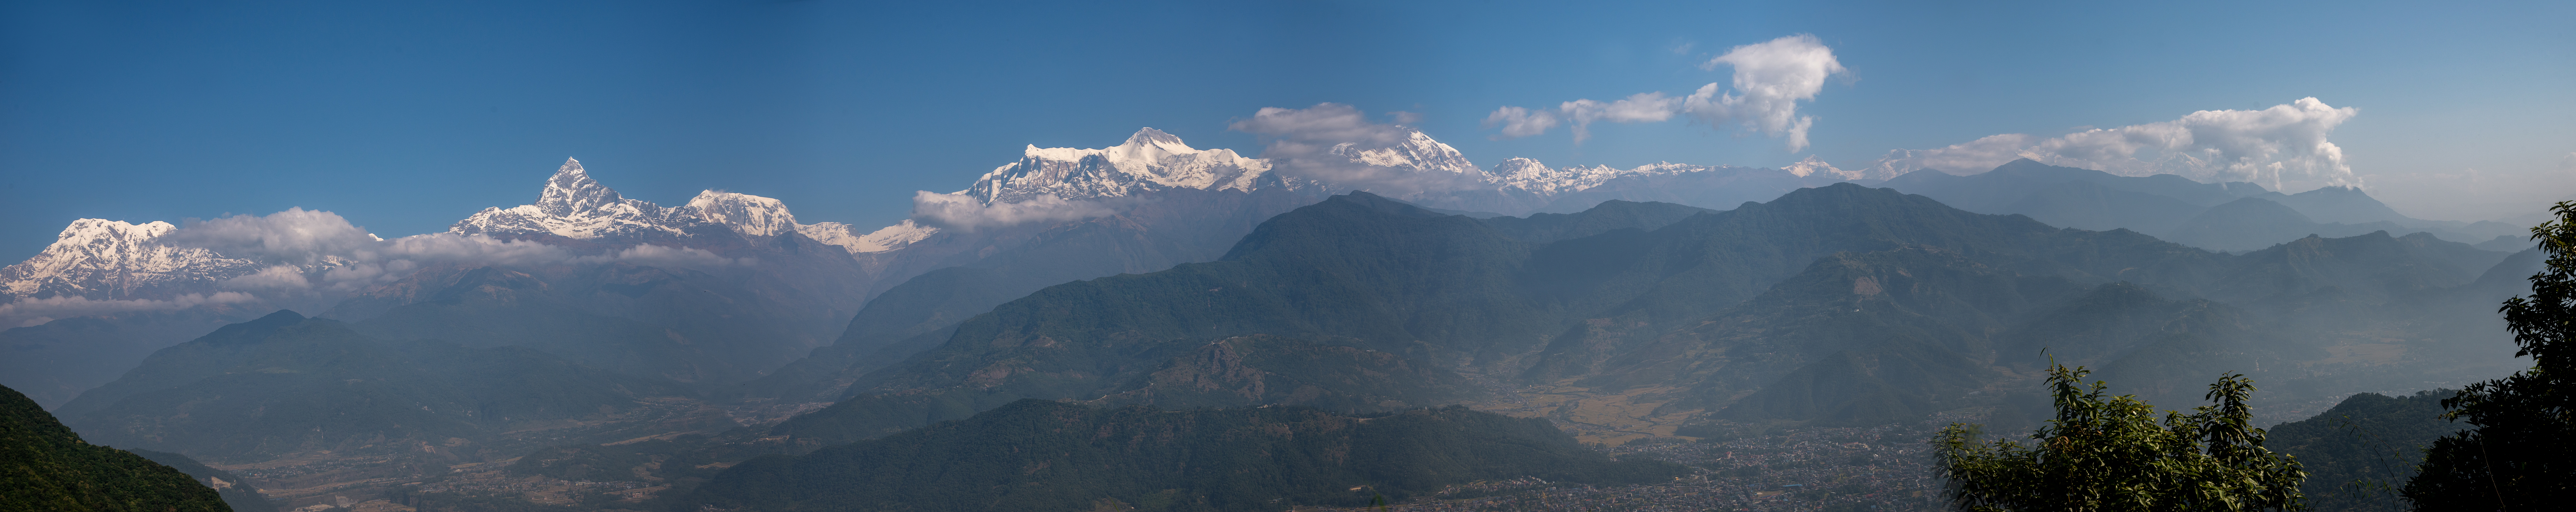 Pokhara-Sarankgot 9-11-22 